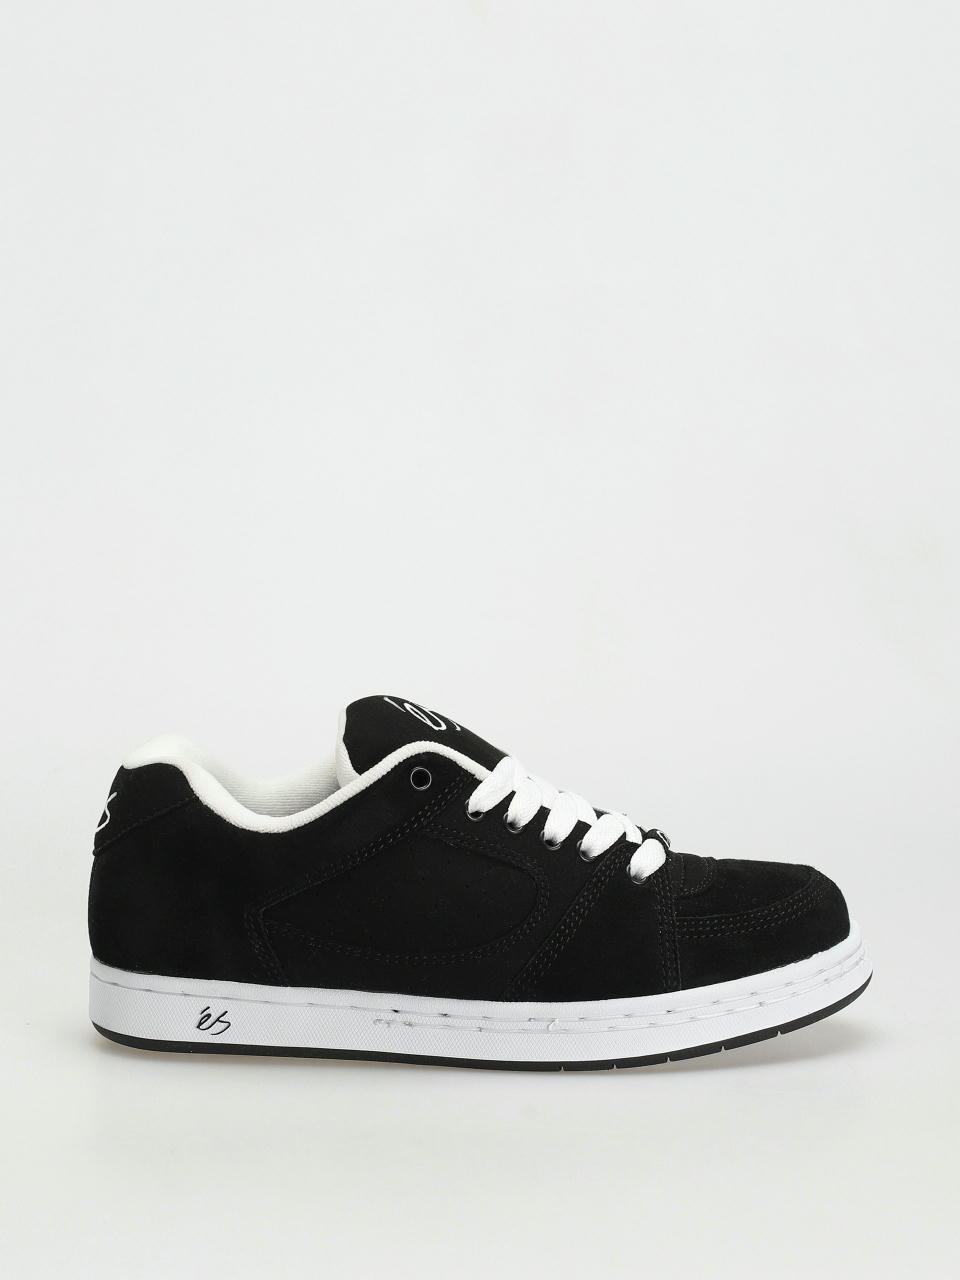 eS Accel Og Shoes (black/white/black)